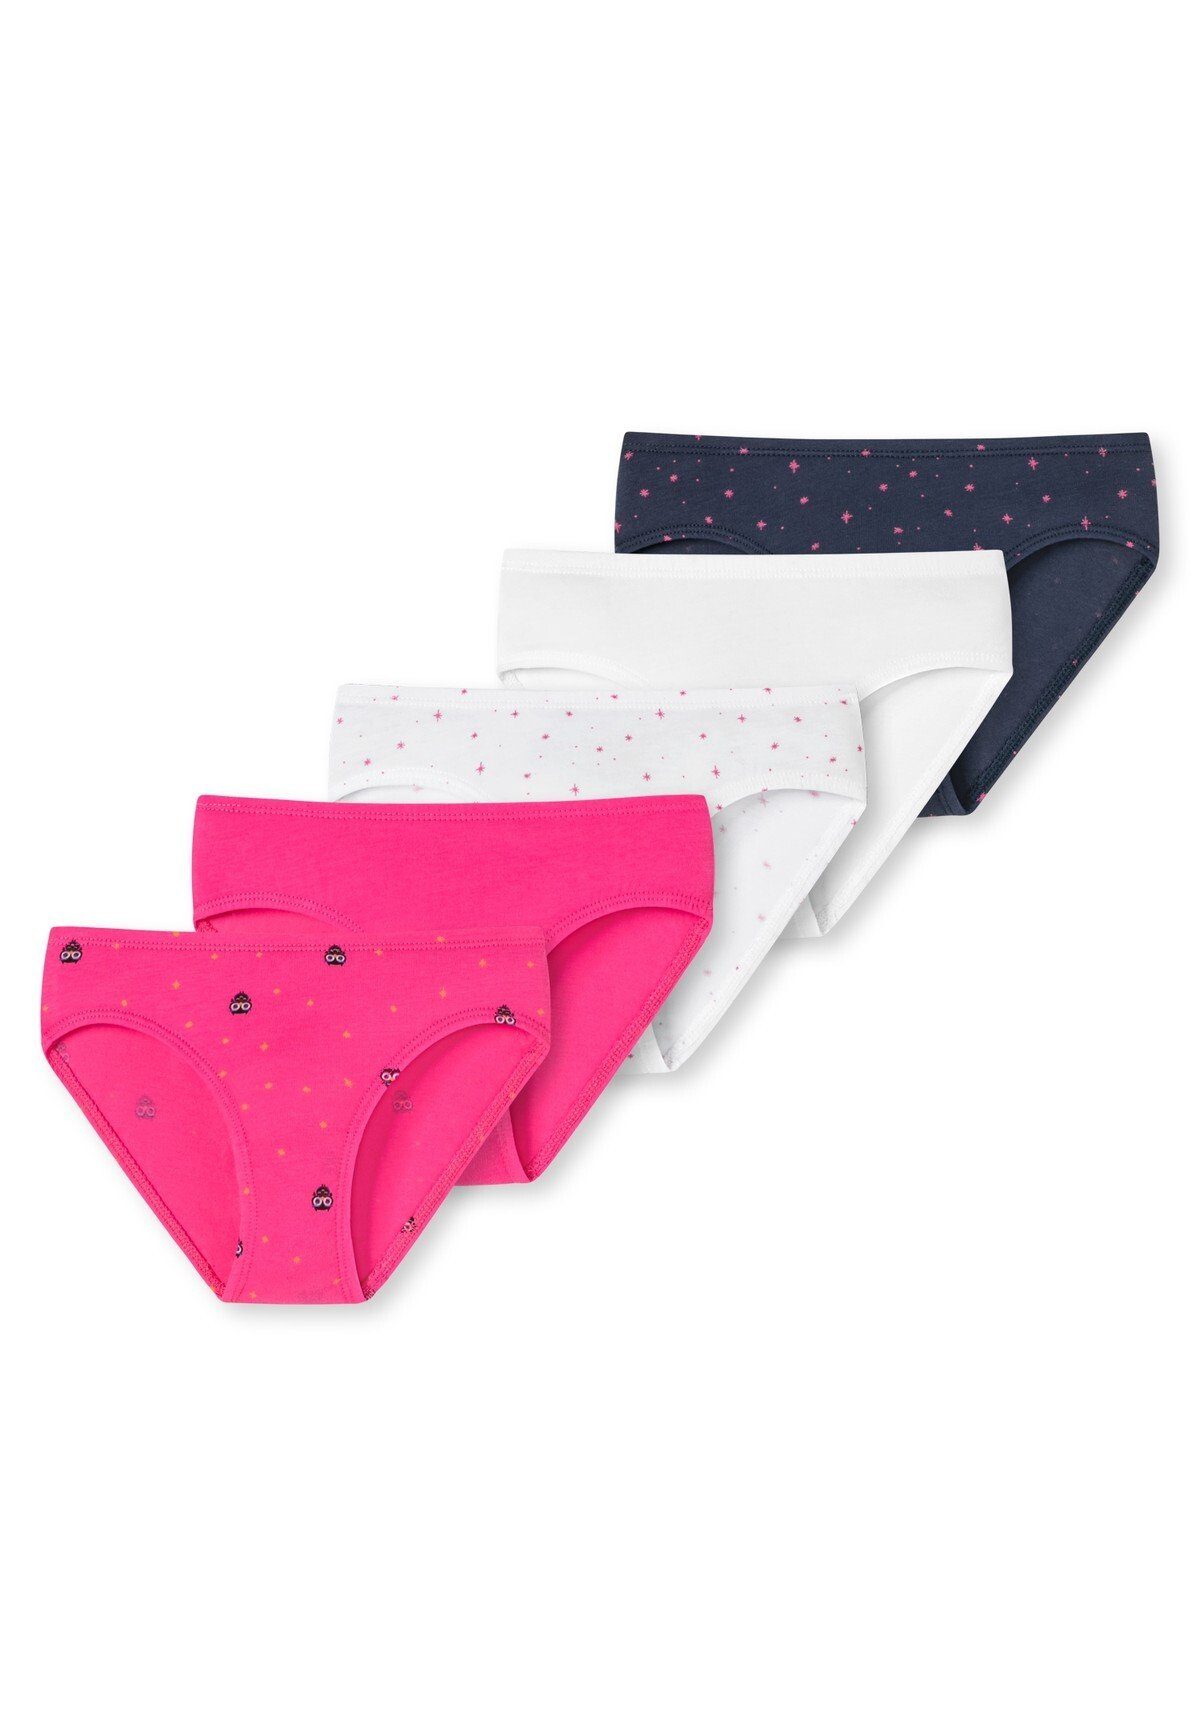 Pants, Shorts Pack Mädchen Pink/Weiß/Dunkelblau Schiesser Unterhose, 5er - Slips Slip